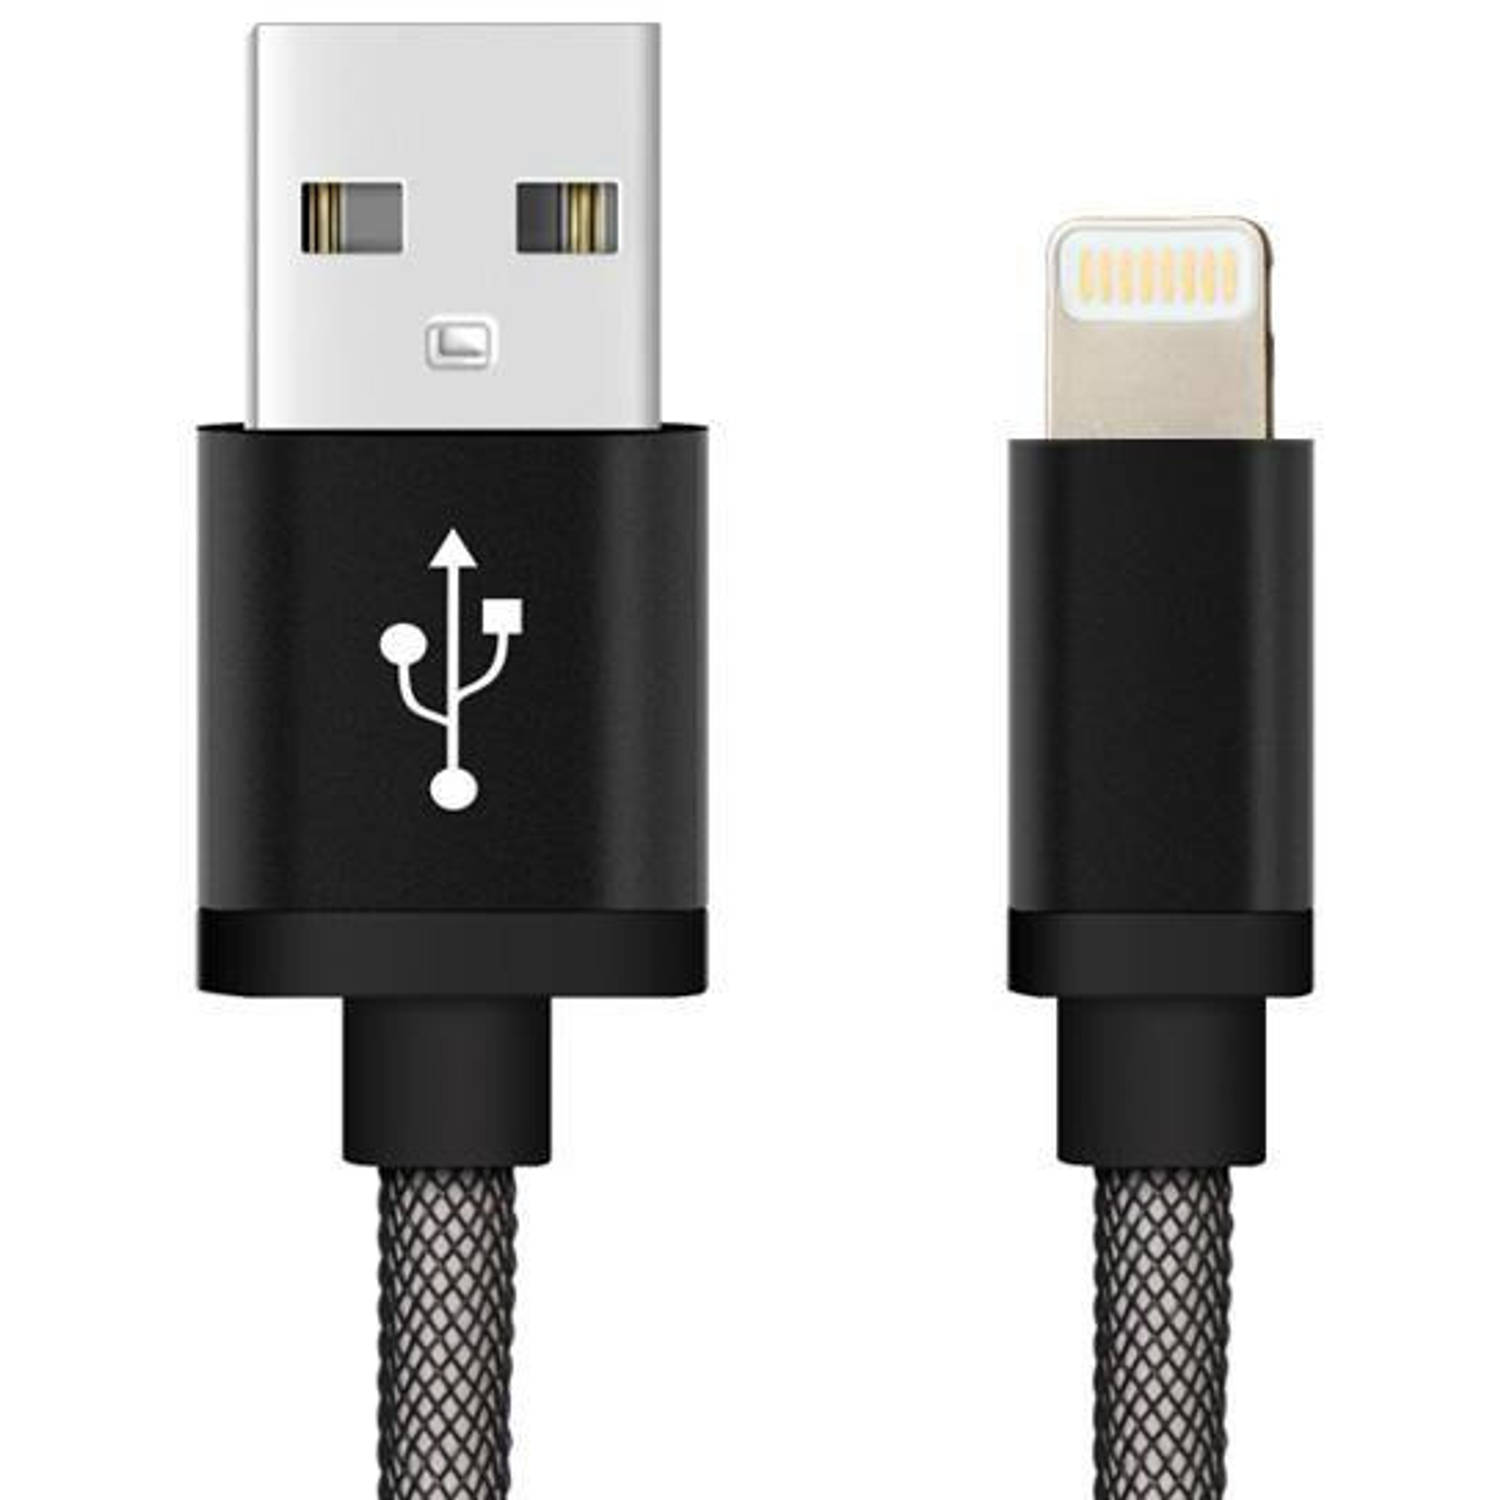 Oplaad kabel voor Iphone (USB Lightning) 1 meter